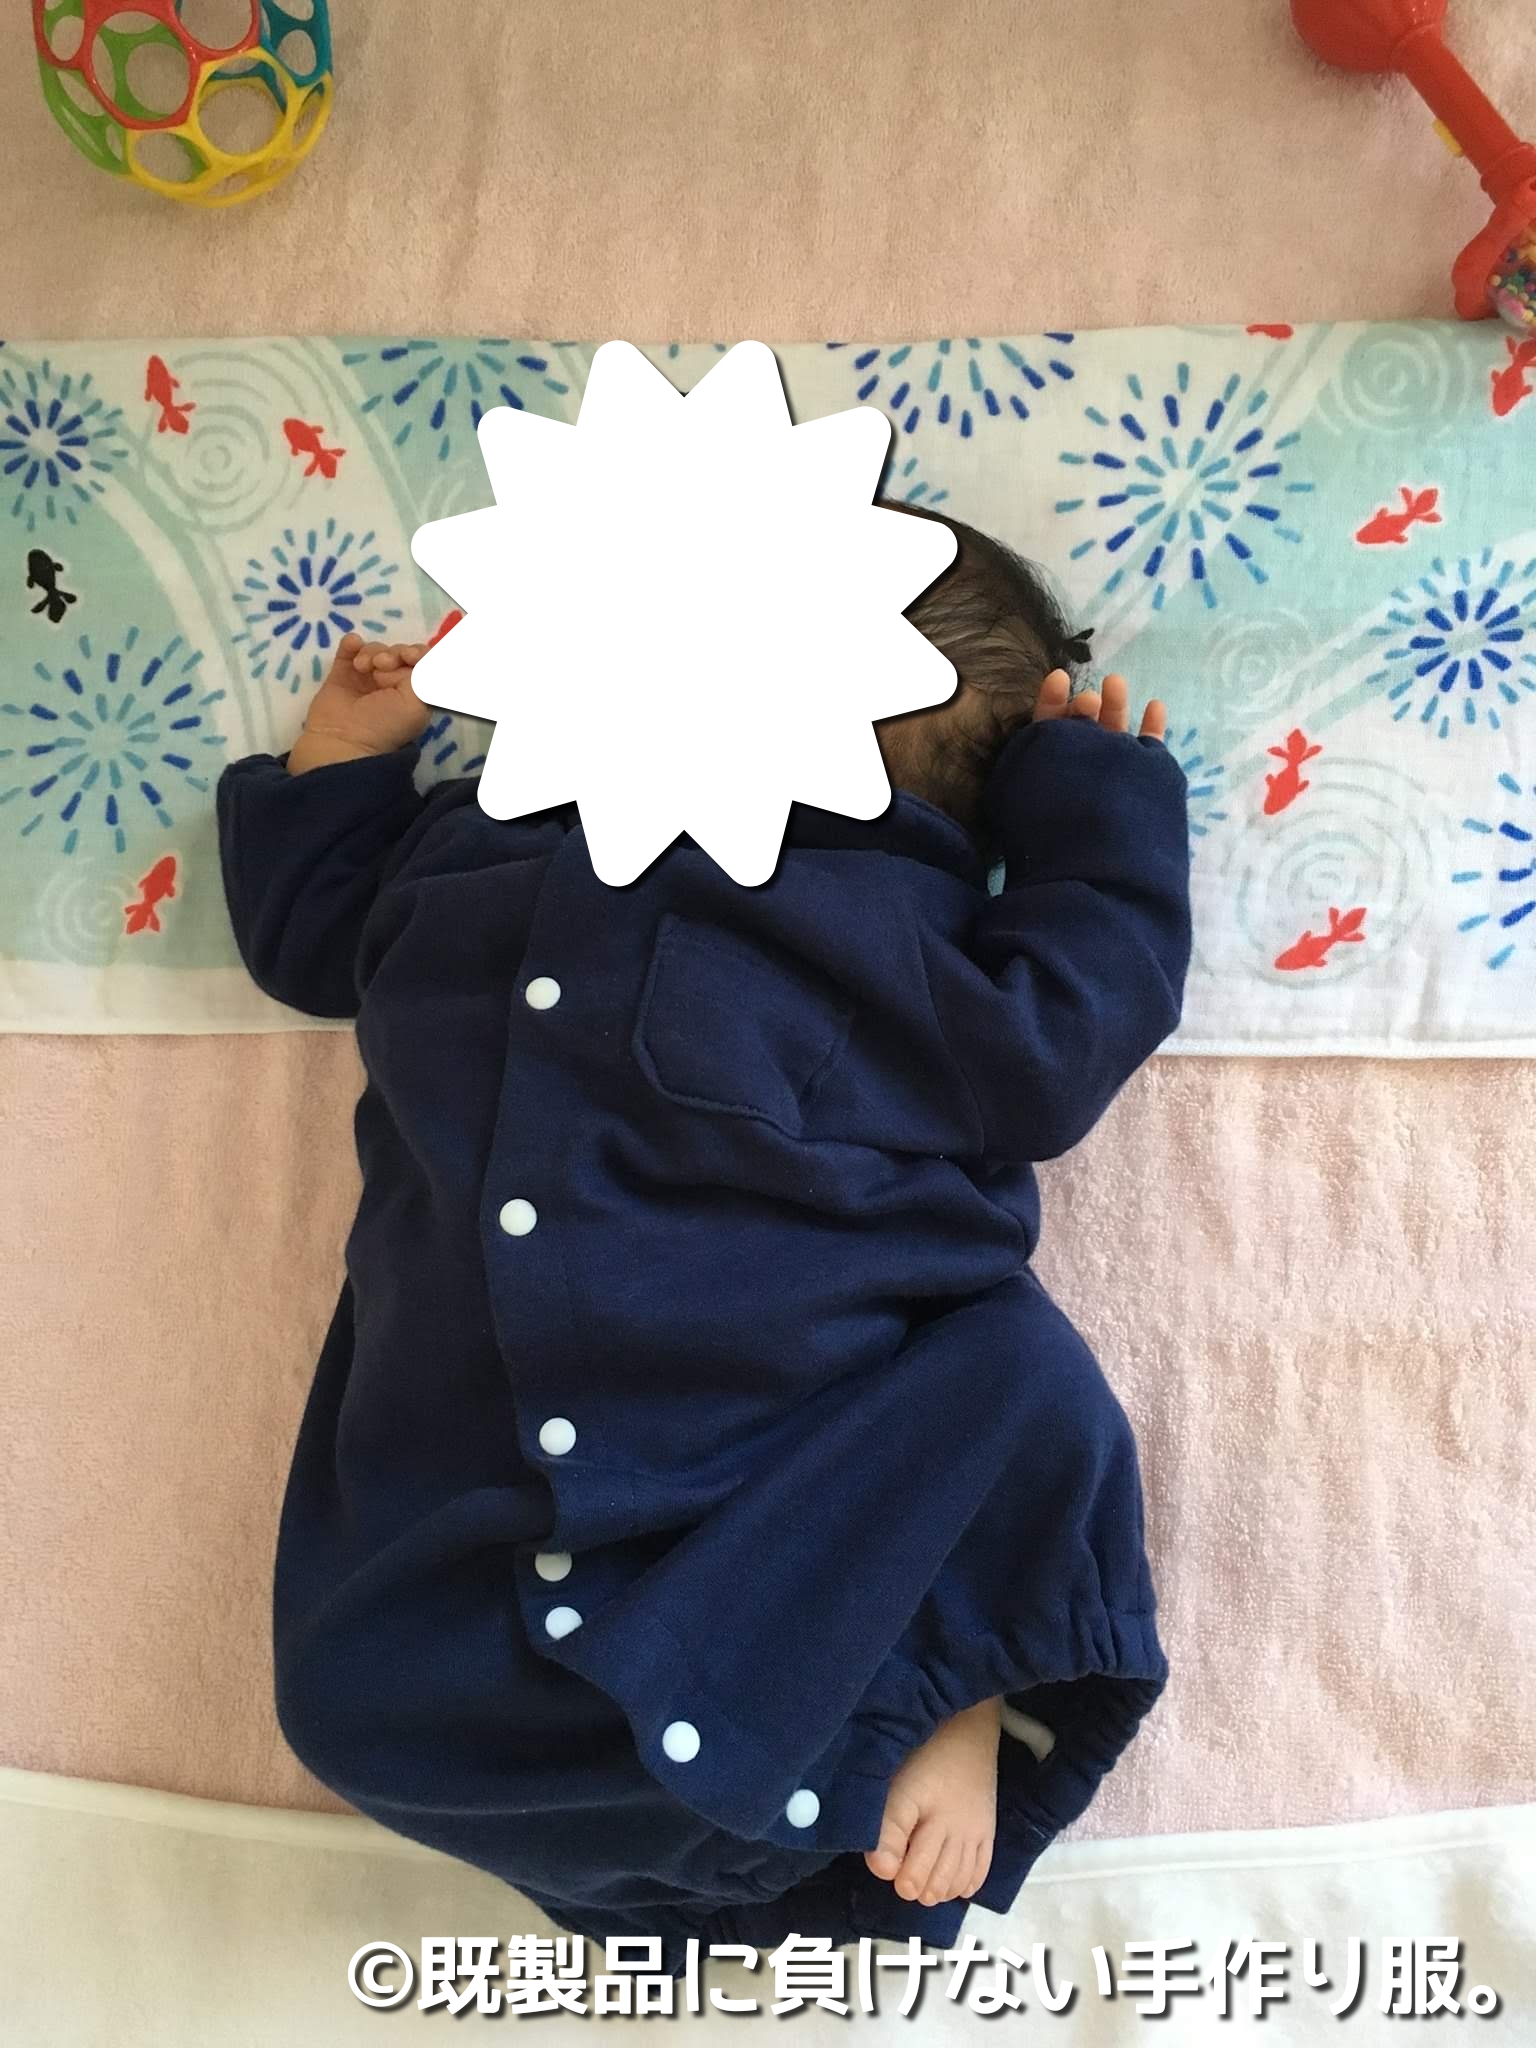 赤ちゃんの成長ごとに着せてきた服を紹介 既製品に負けない最高の手作り服